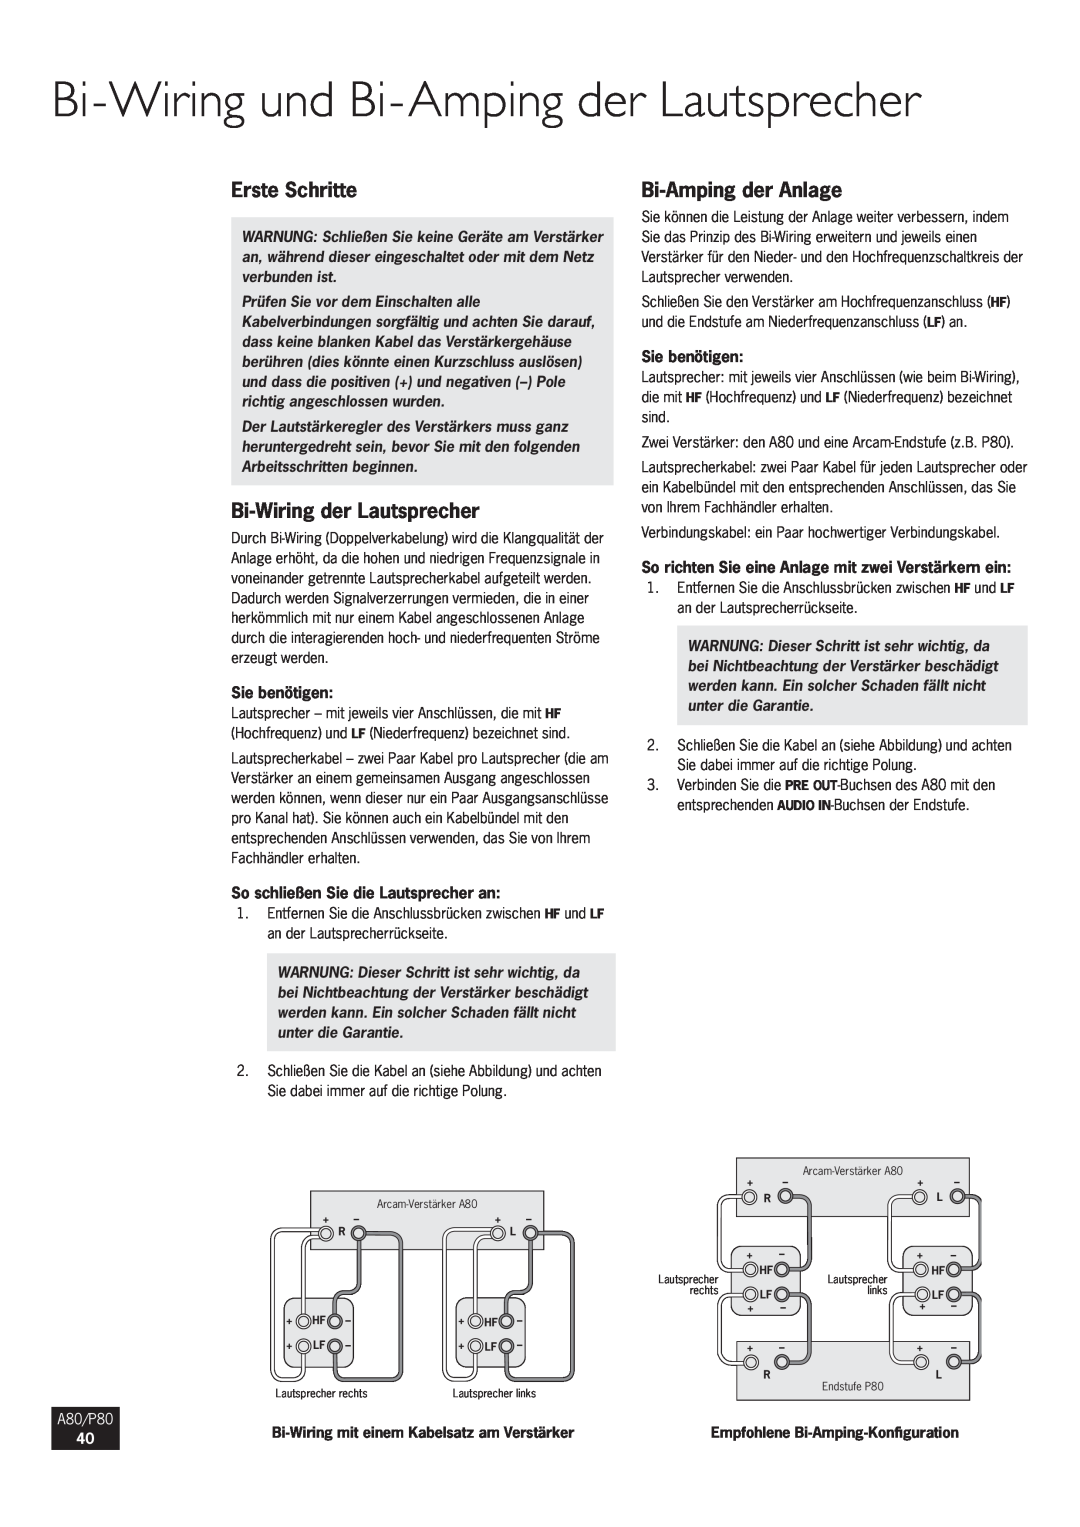 Arcam Bi-Wiringund Bi-Ampingder Lautsprecher, Erste Schritte, Bi-Wiringder Lautsprecher, Bi-Ampingder Anlage, A80/P80 